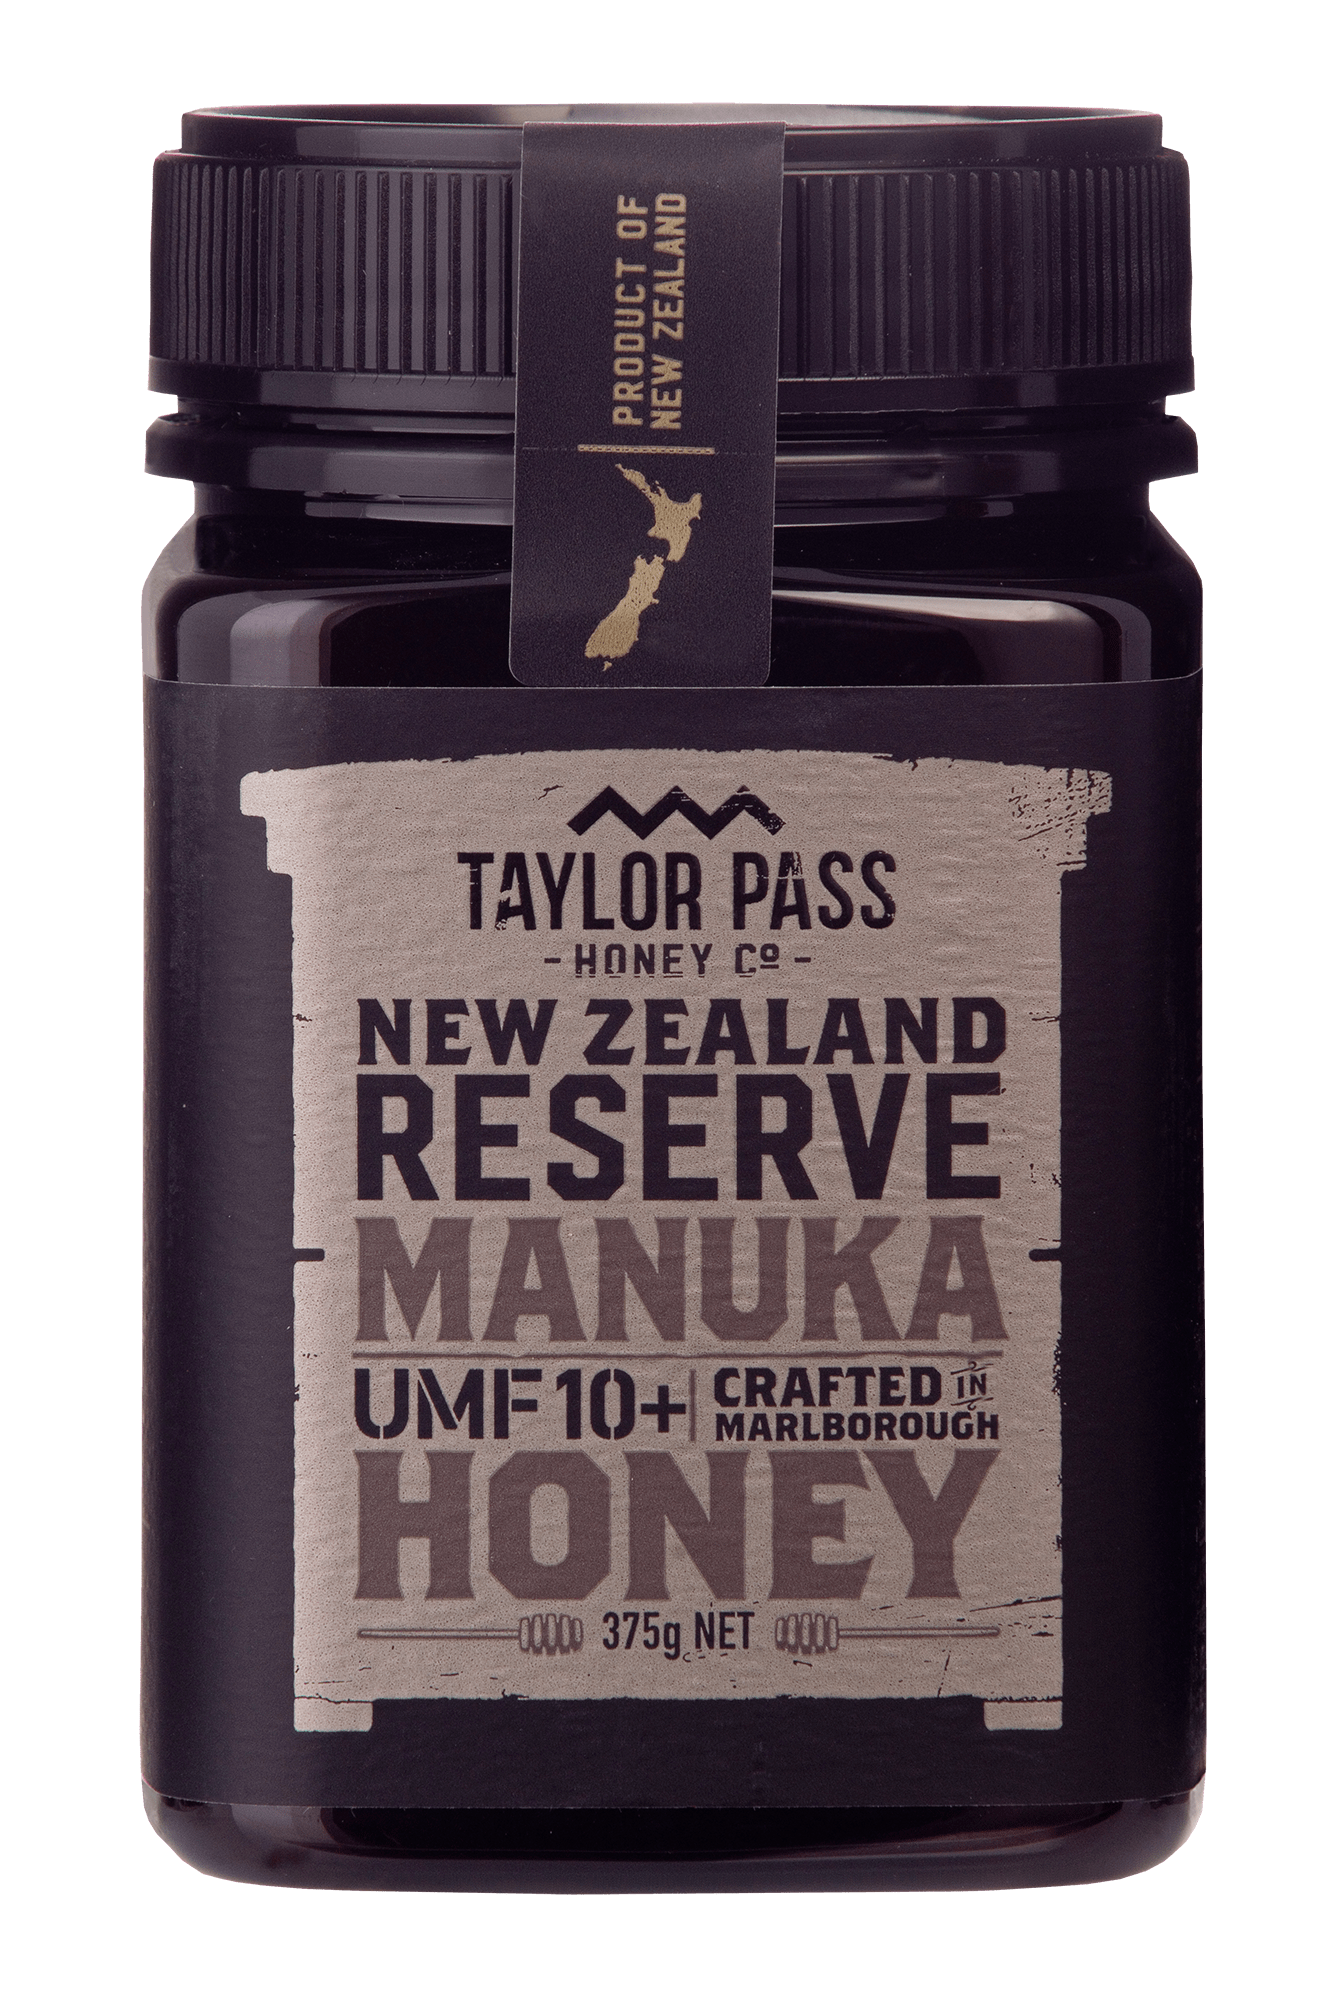 Taylor Pass Honey Co Taylor Pass Honey Co Reserve Manuka UMF10+ Honey